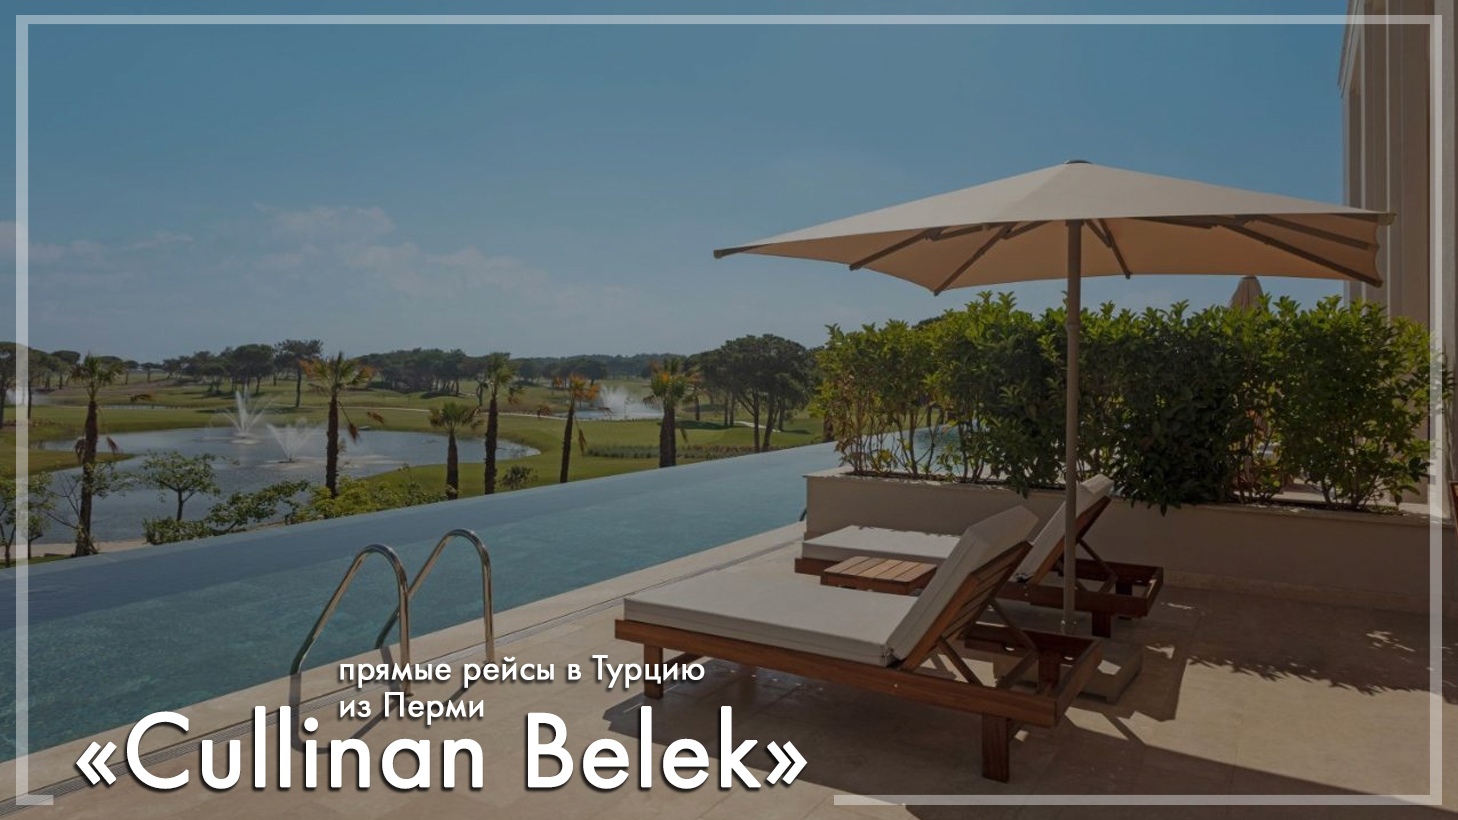 Cullinan Belek в Турции. Туры из Перми